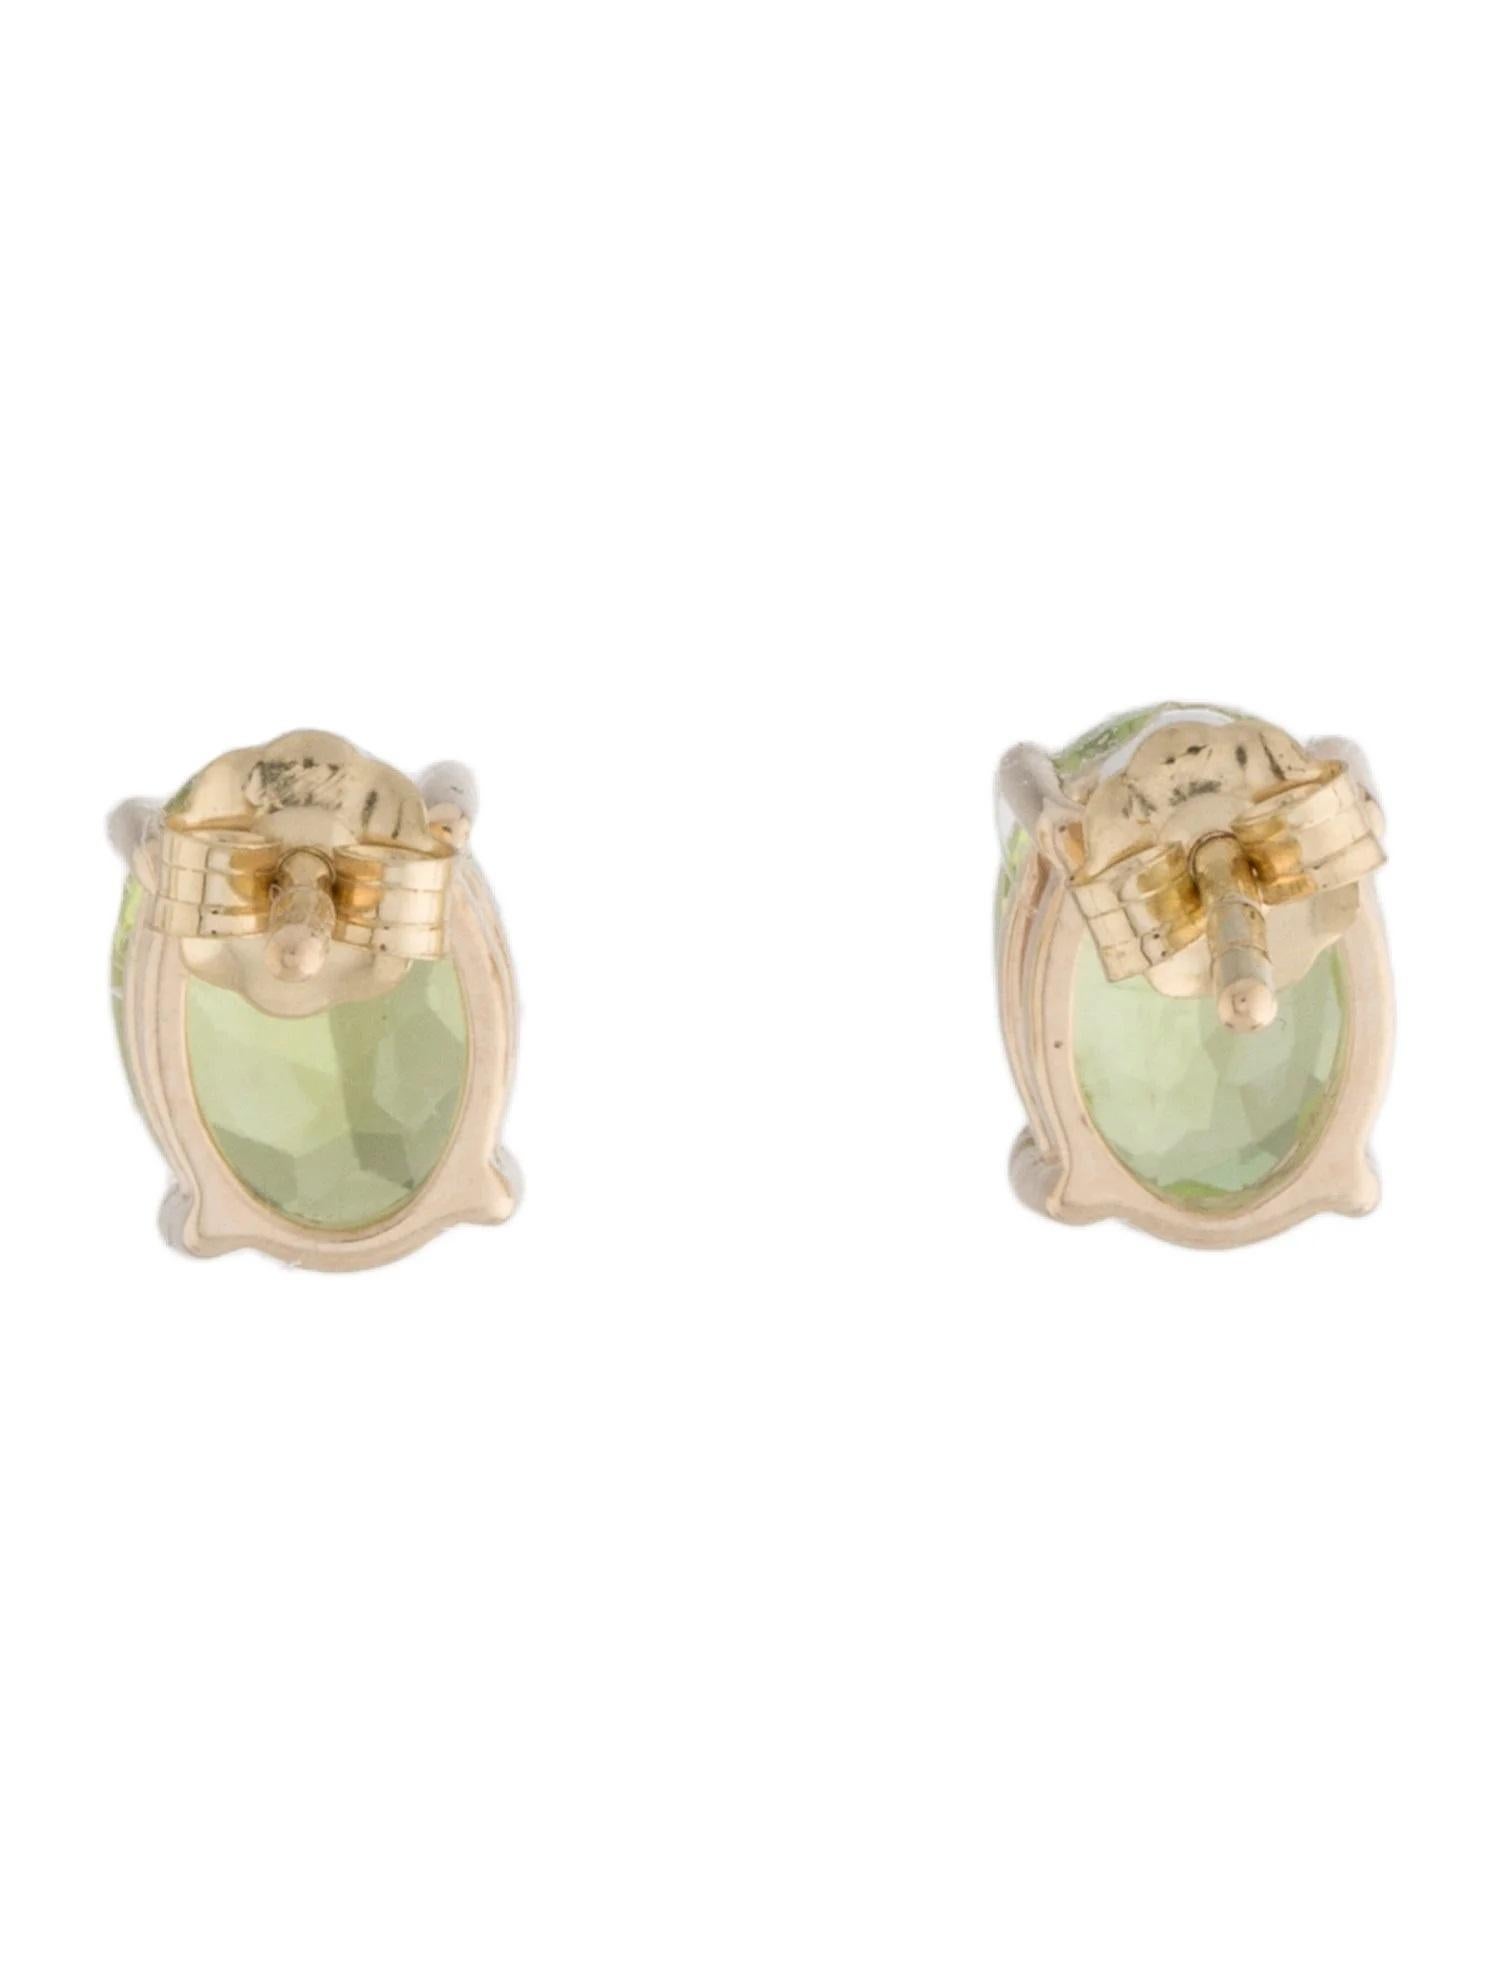 Artist 14K 2.84ctw Peridot Stud Earrings - Oval Green Peridot For Sale